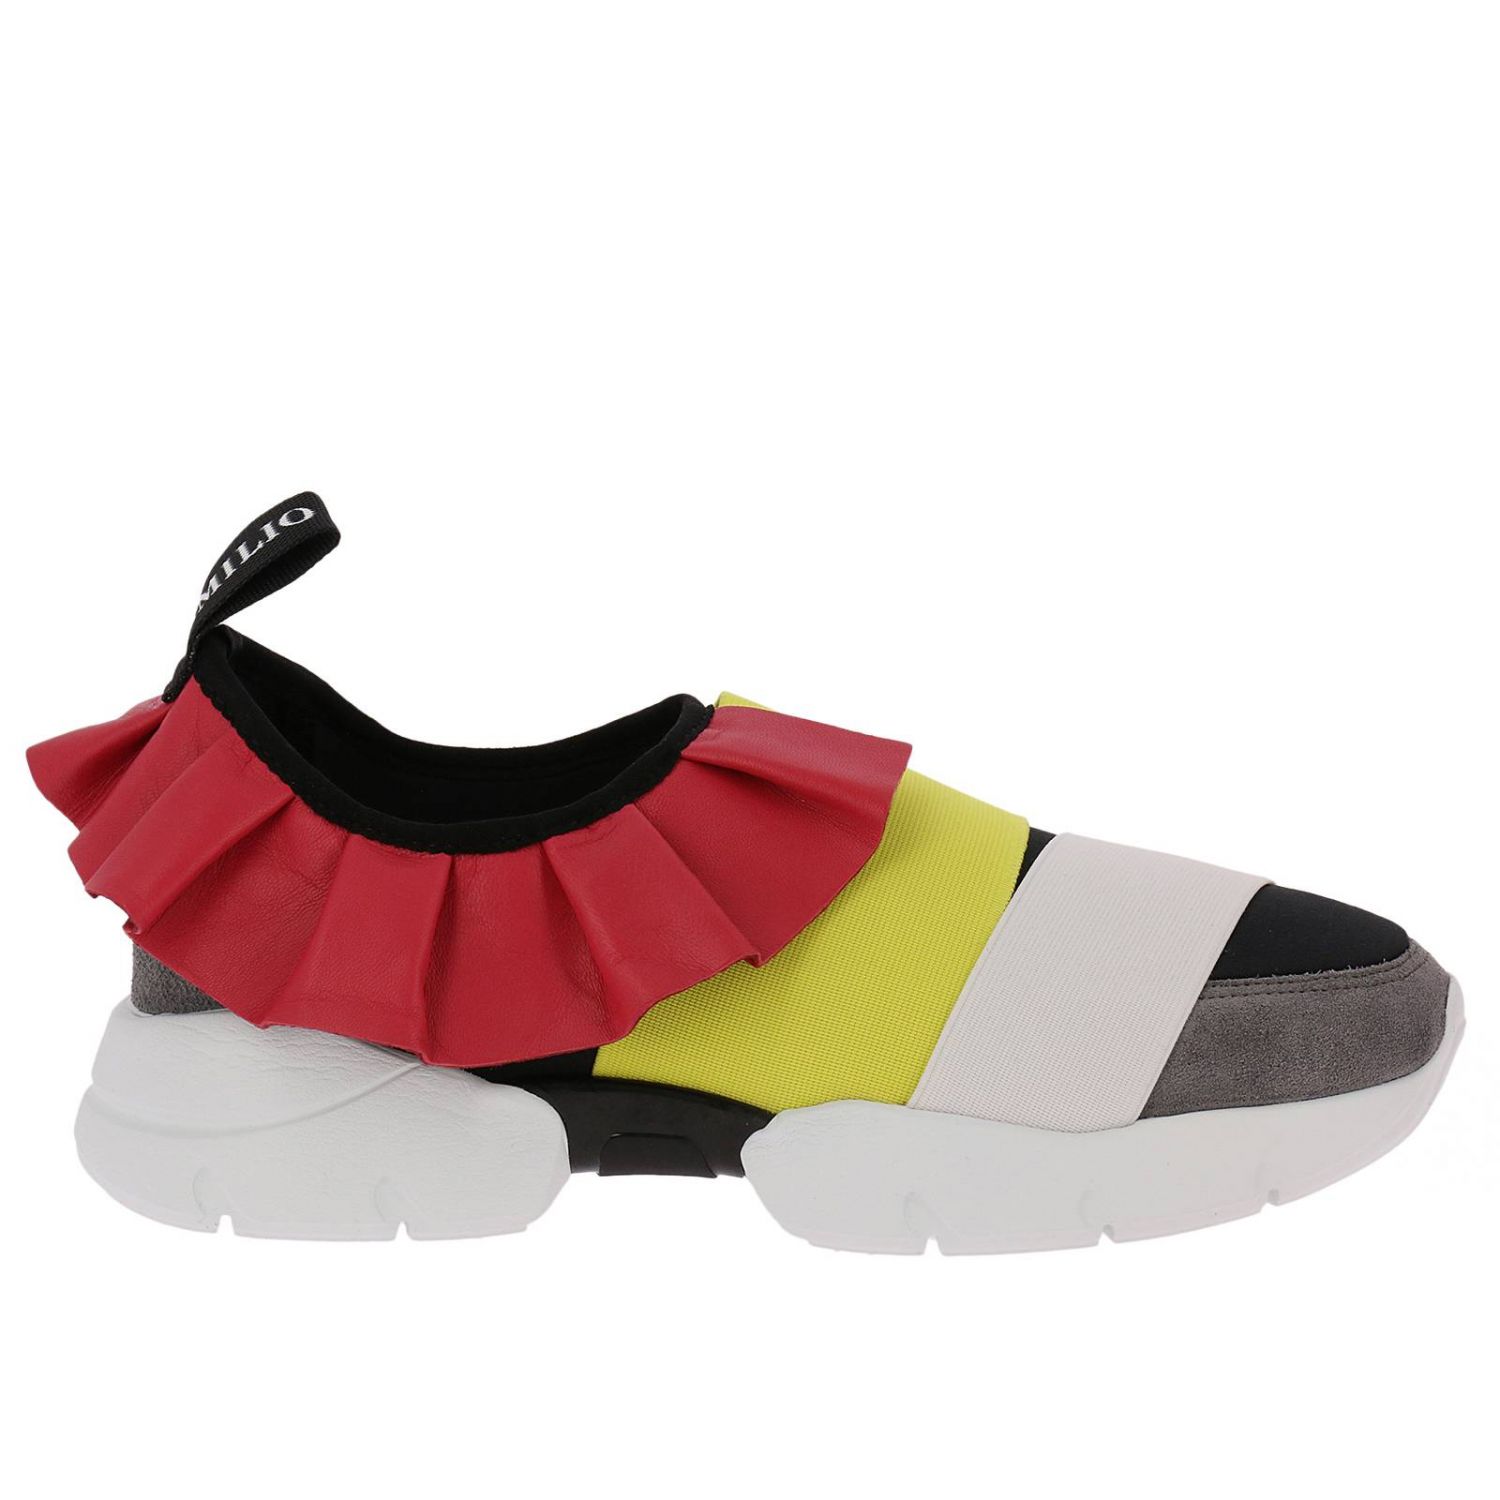 Emilio Pucci Outlet: Shoes women - Black | Sneakers Emilio Pucci 82CE53 ...